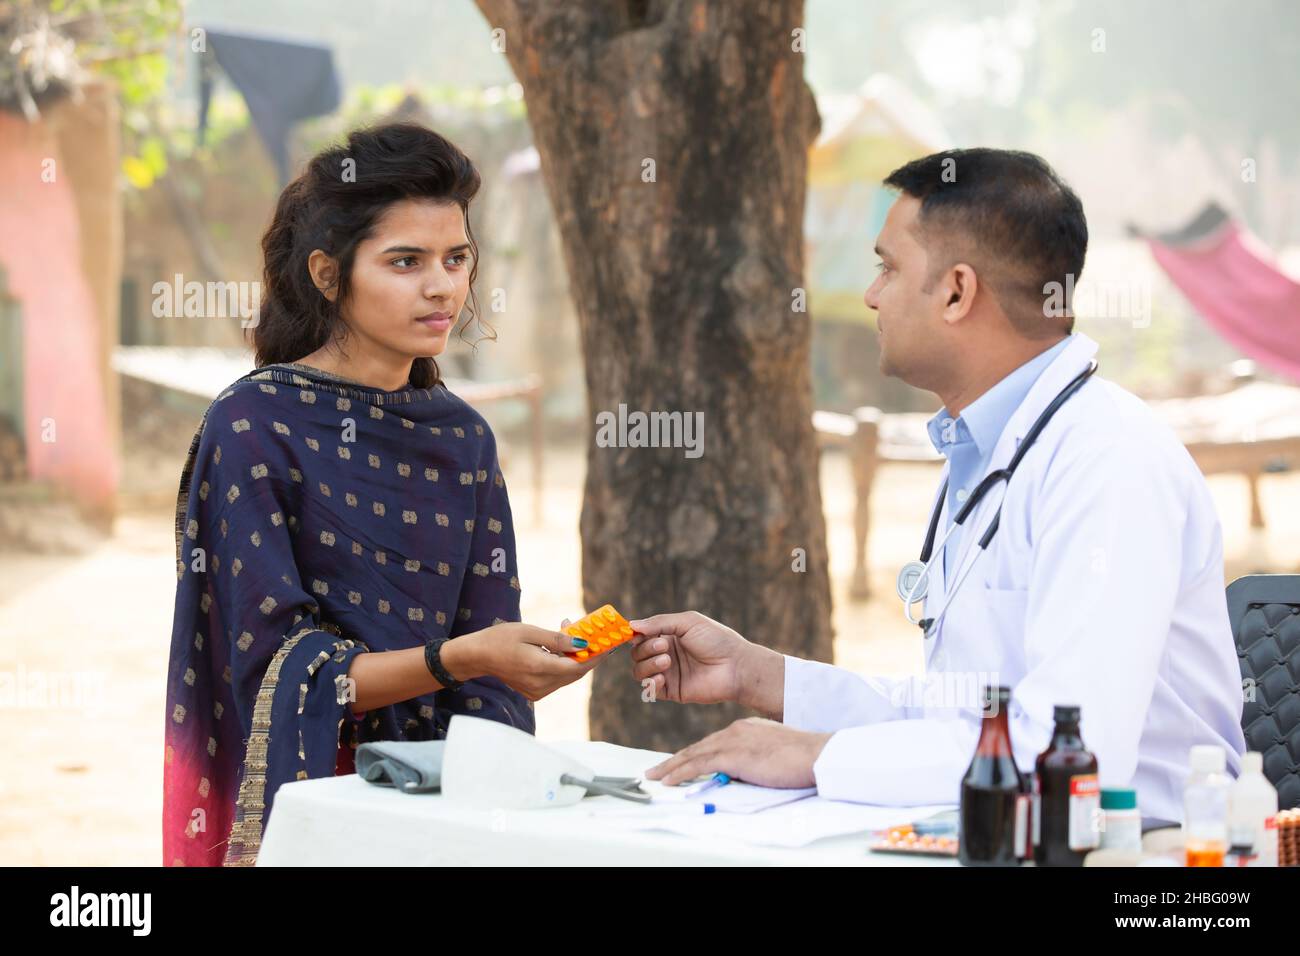 Medico indiano maschio dare medicina alla giovane ragazza adulta al villaggio, donna ottenere tablet droga da persona medica all'aperto. Sanità rurale india. Foto Stock